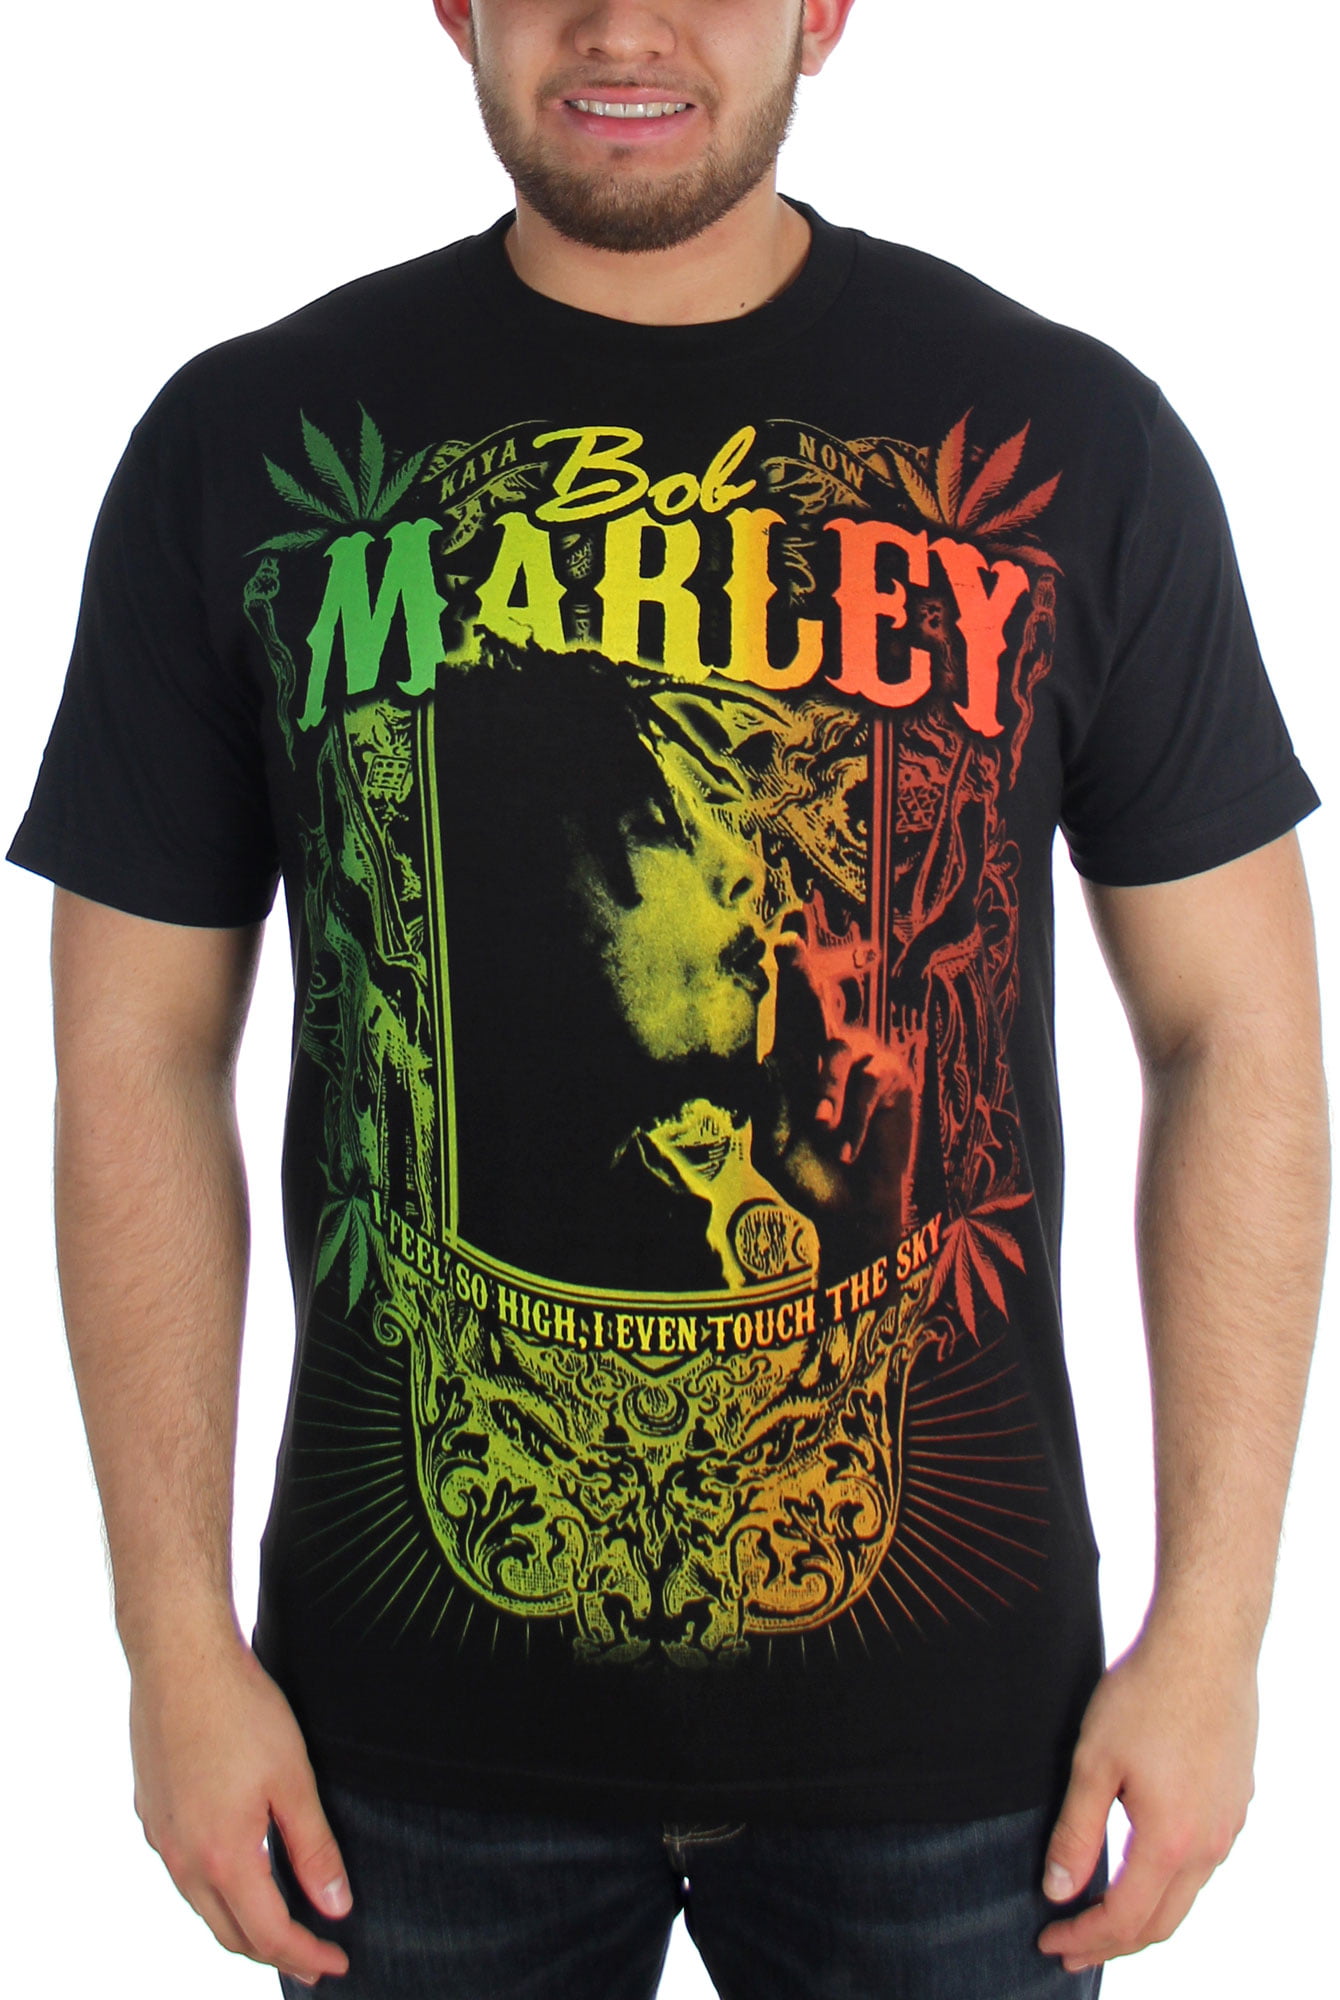 Bob Marley - Kaya Now Jumbo Adult T-Shirt in Black - Walmart.com